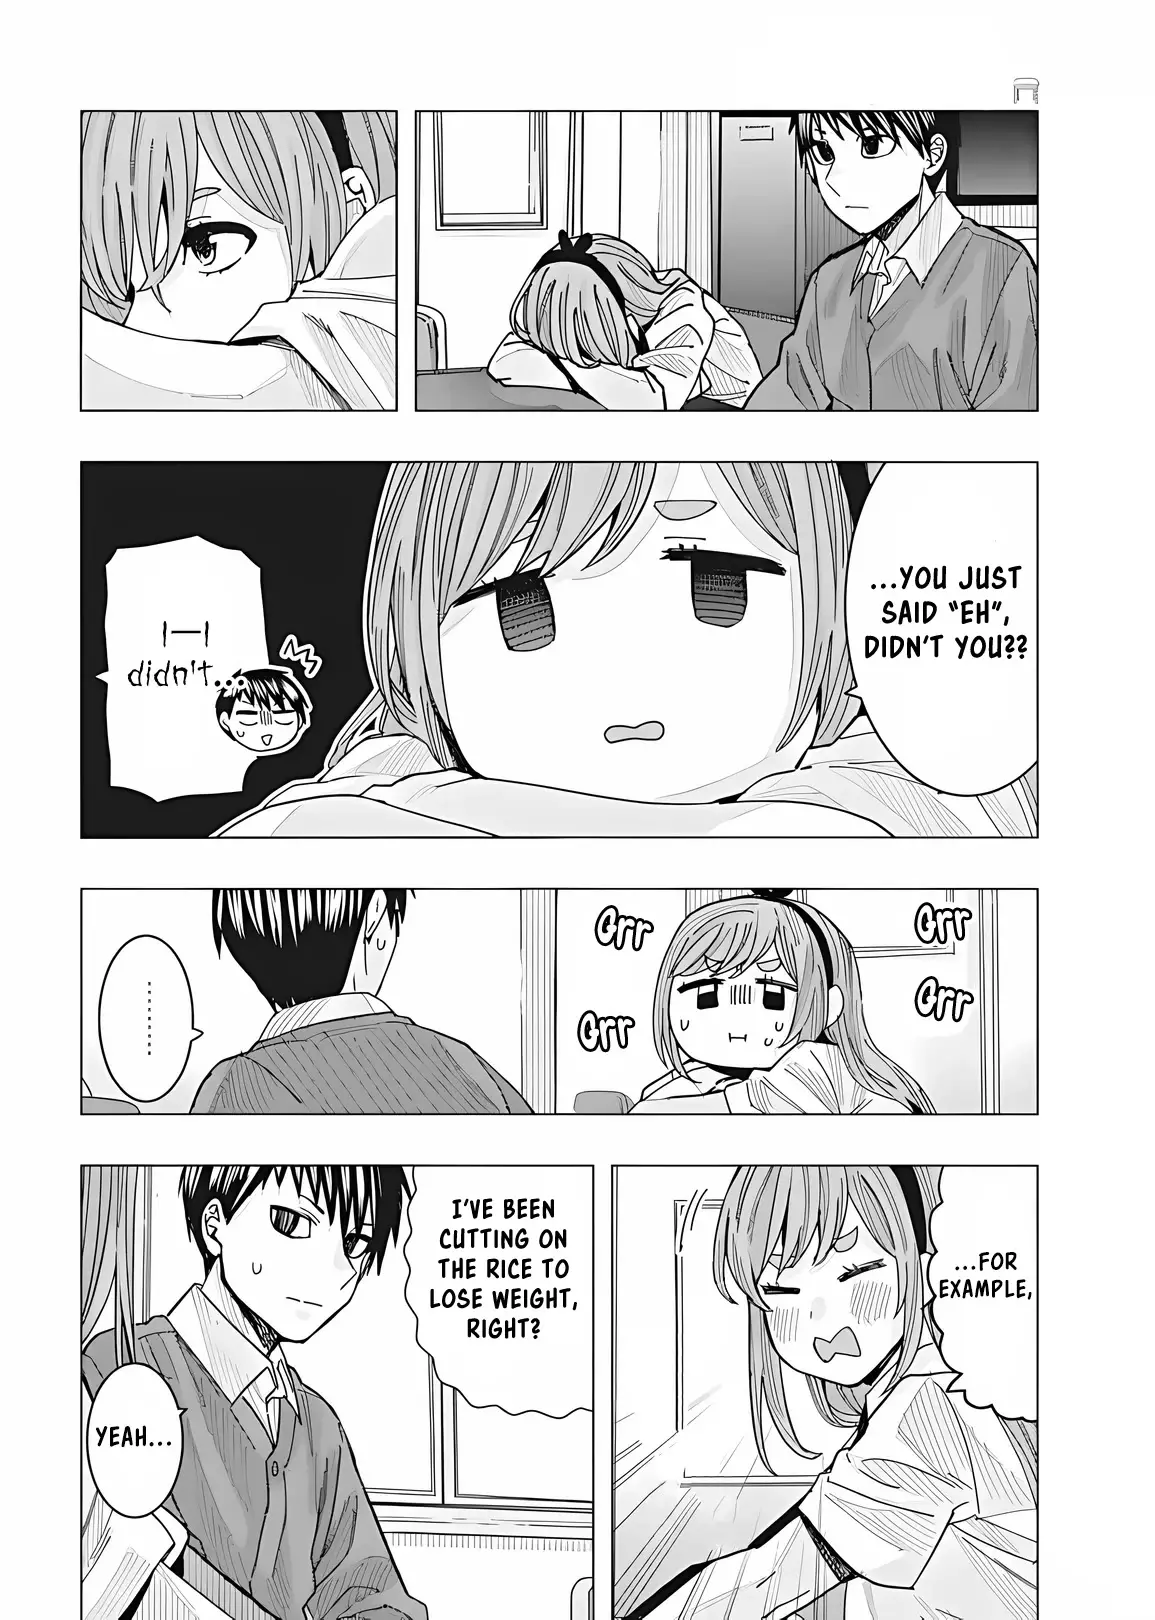 "nobukuni-San" Does She Like Me? - 23 page 12-474a5a06